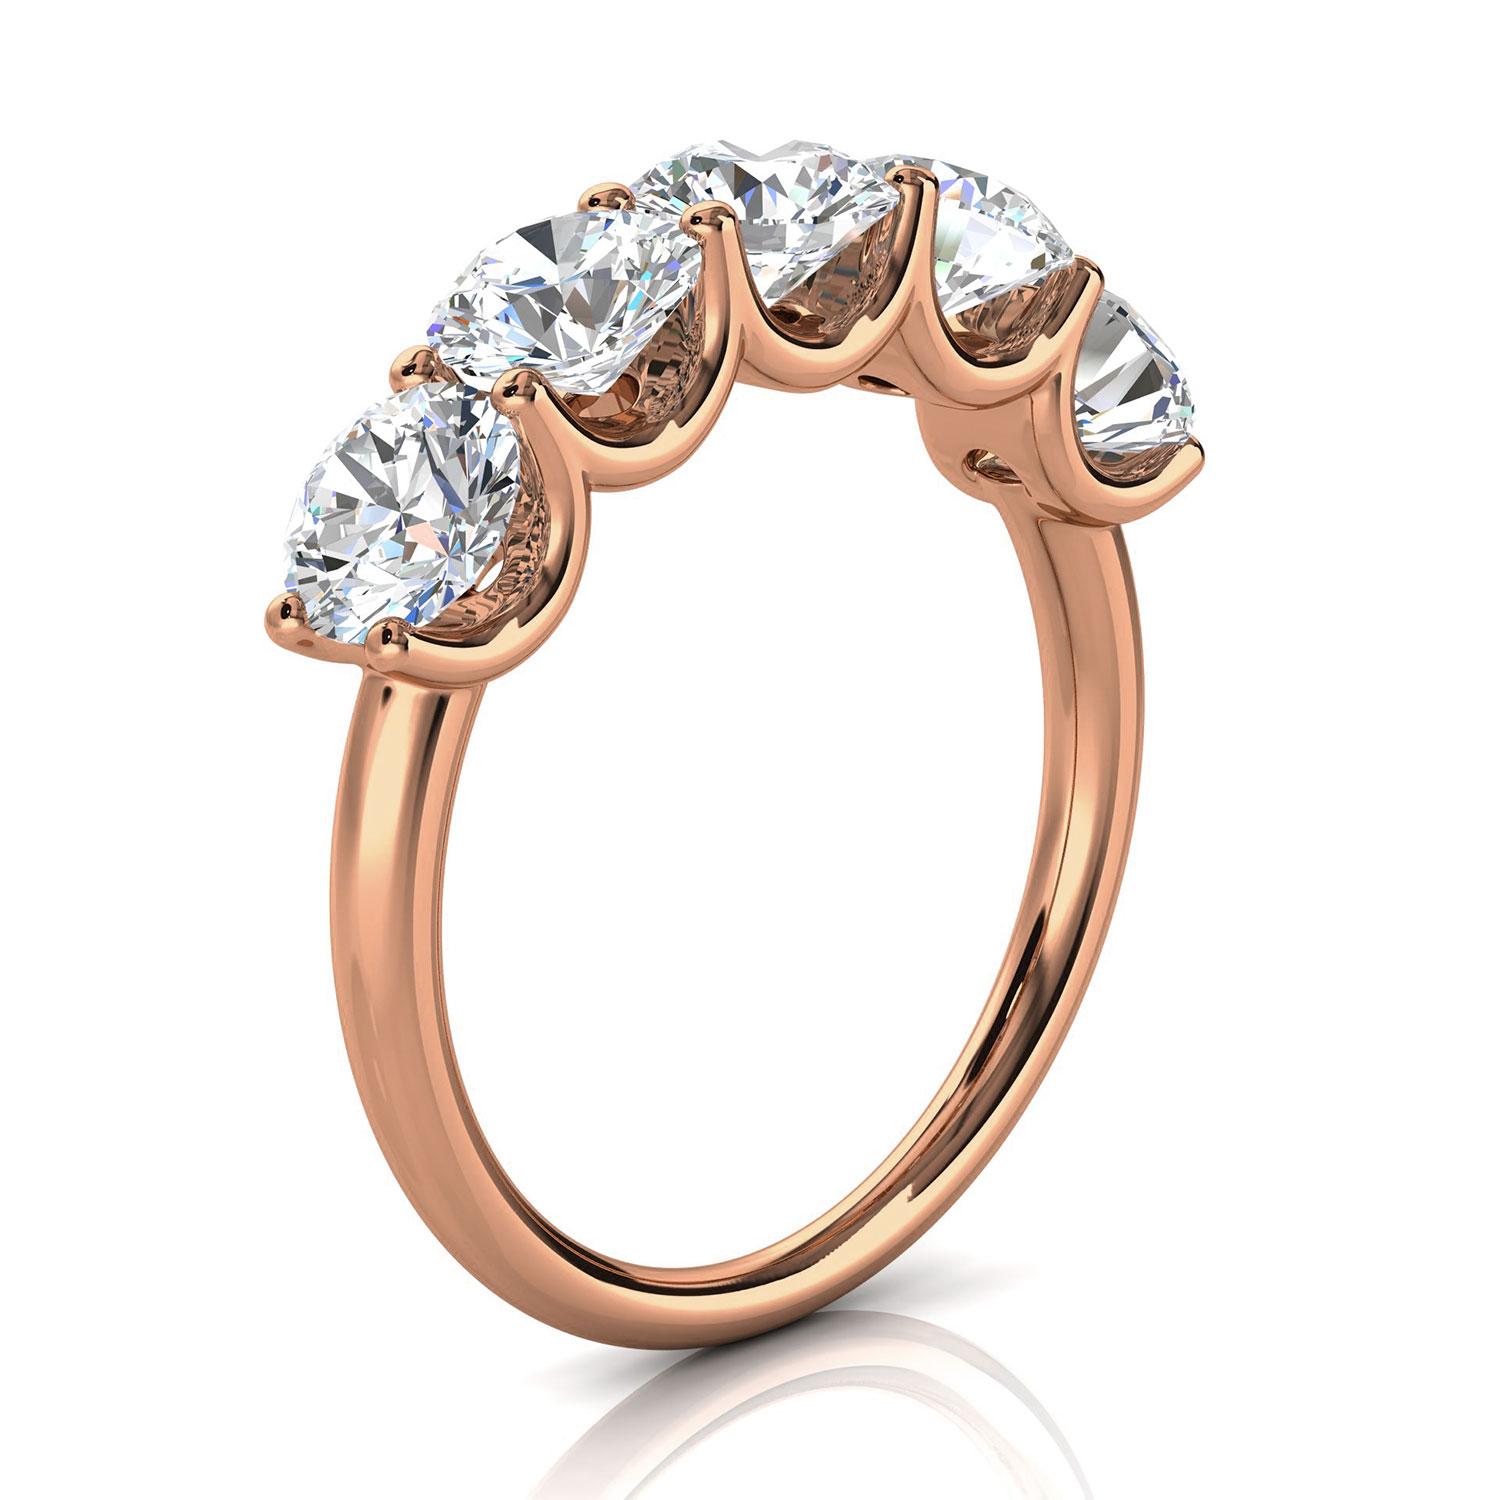 Dieser Ring verfügt über fünf (5) schwimmende Brilliante runde Diamanten in 